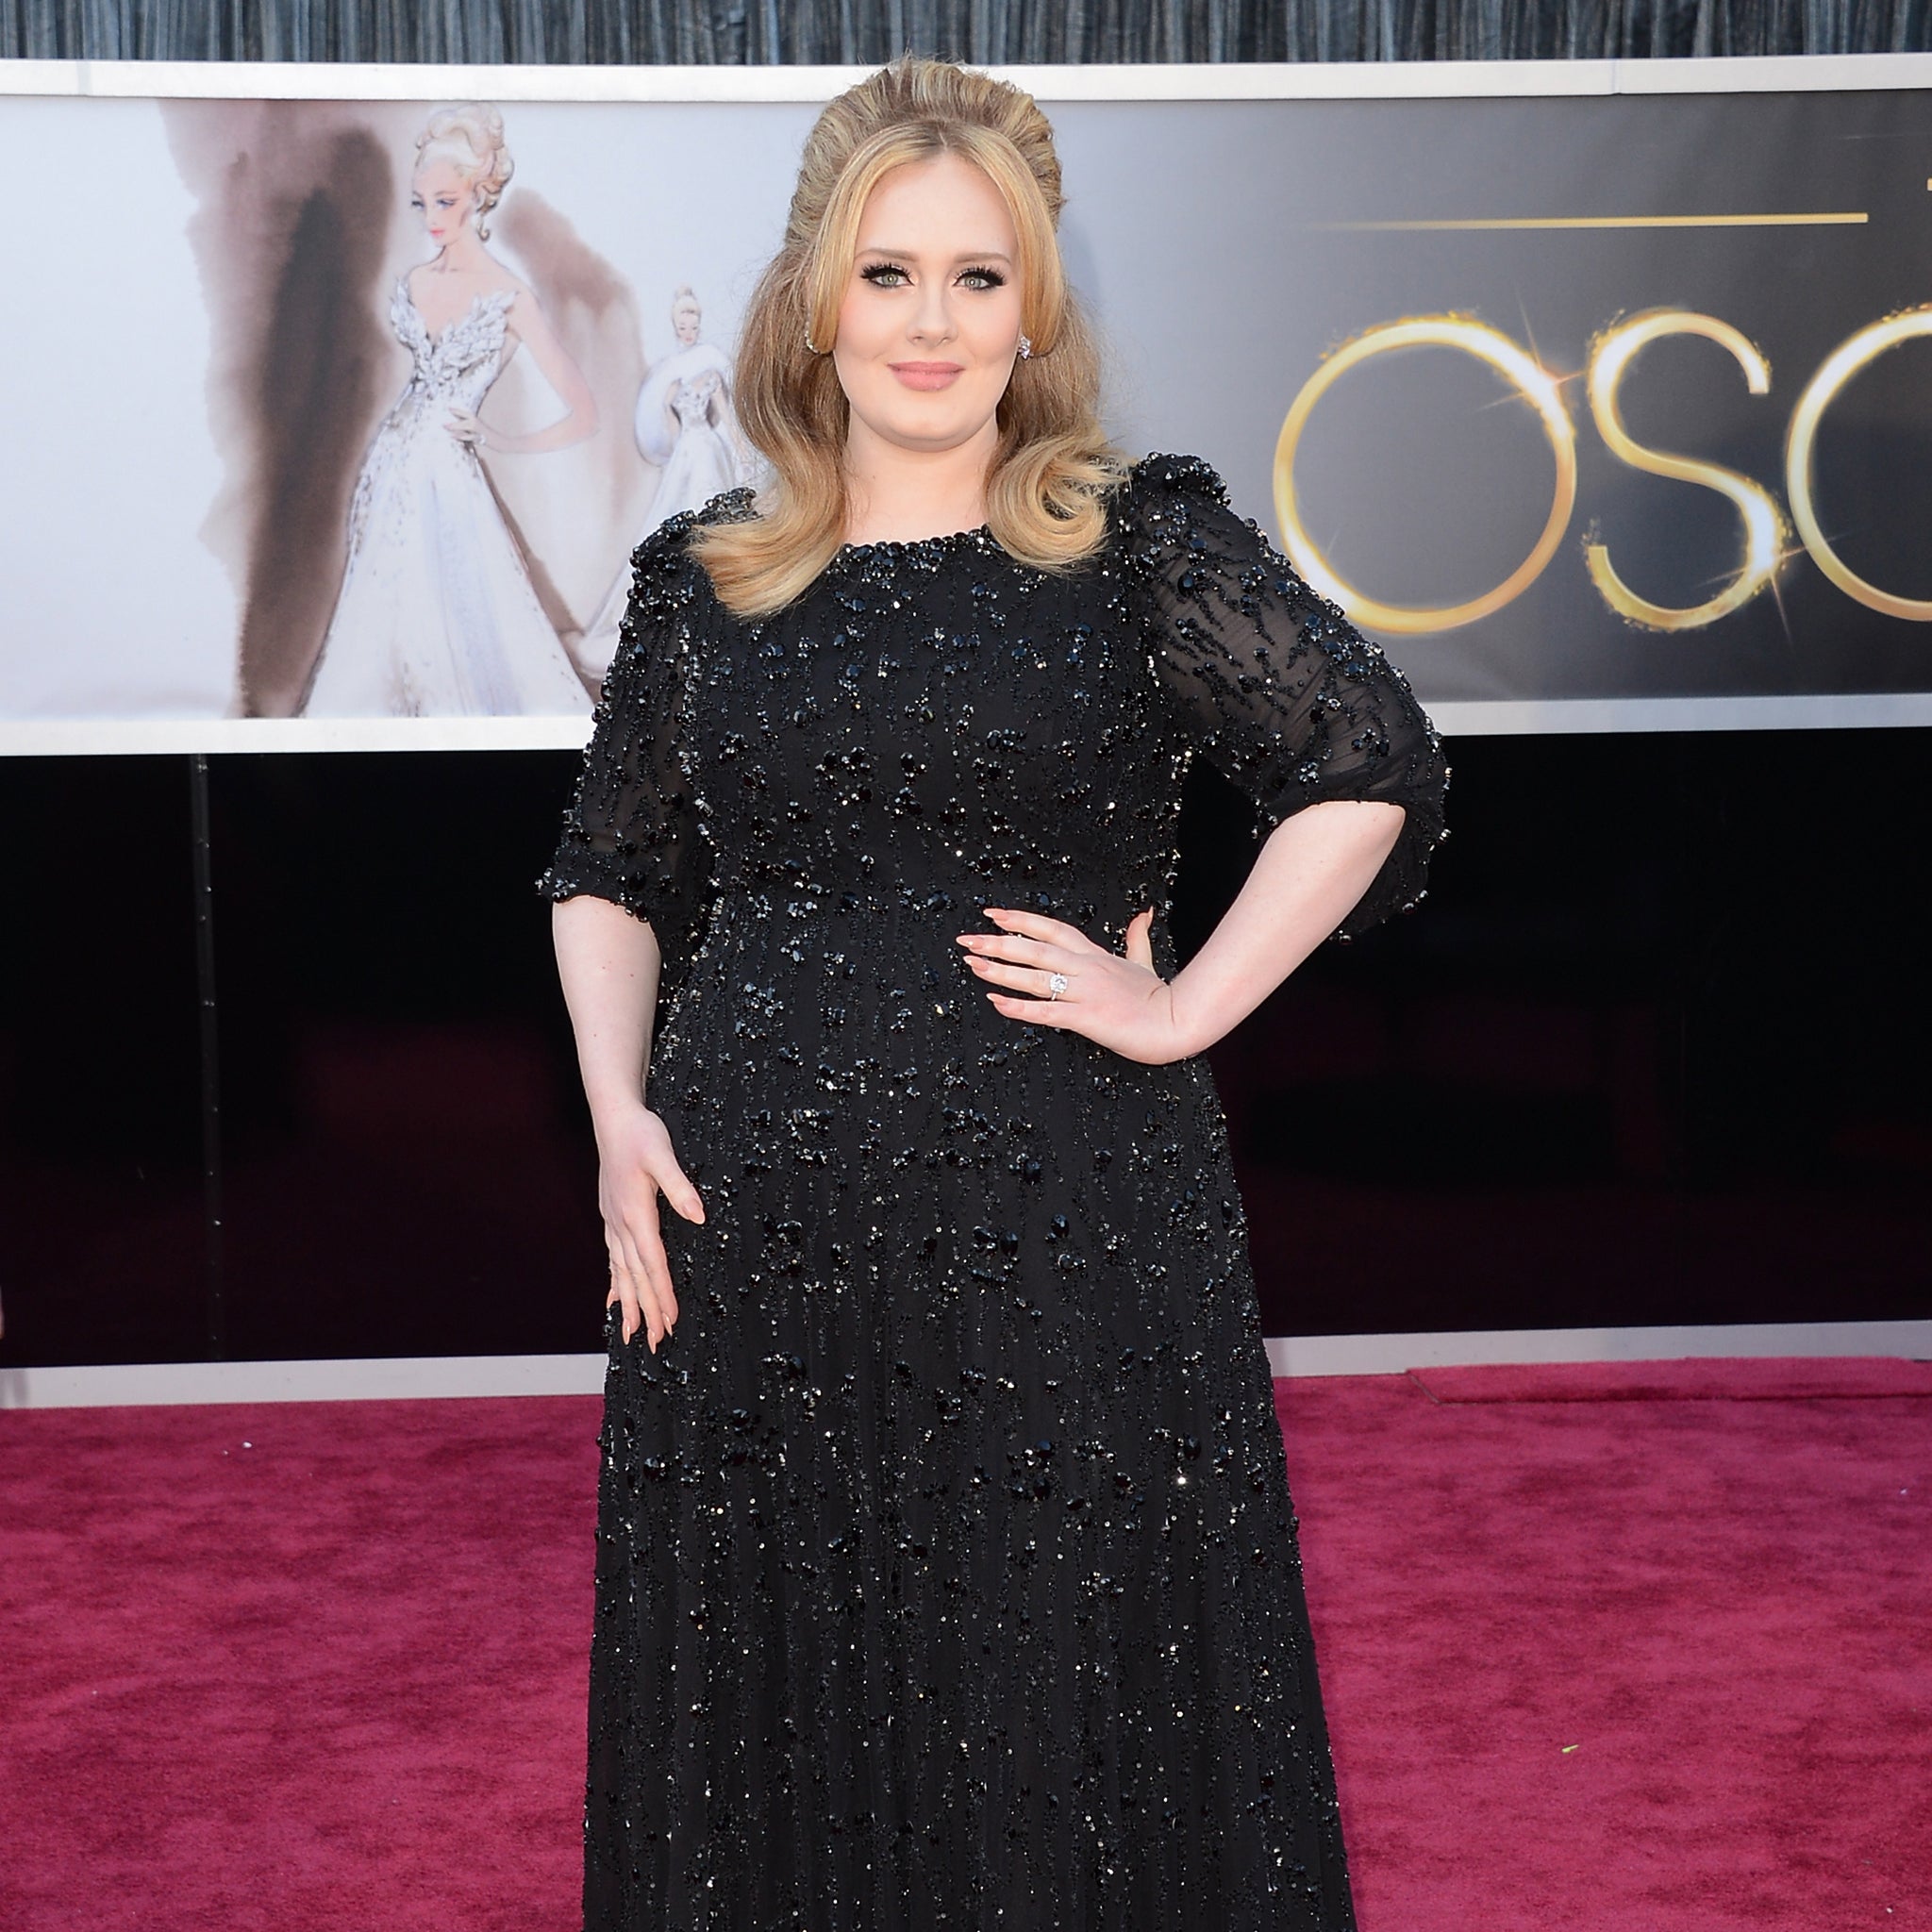 Adele.jpg